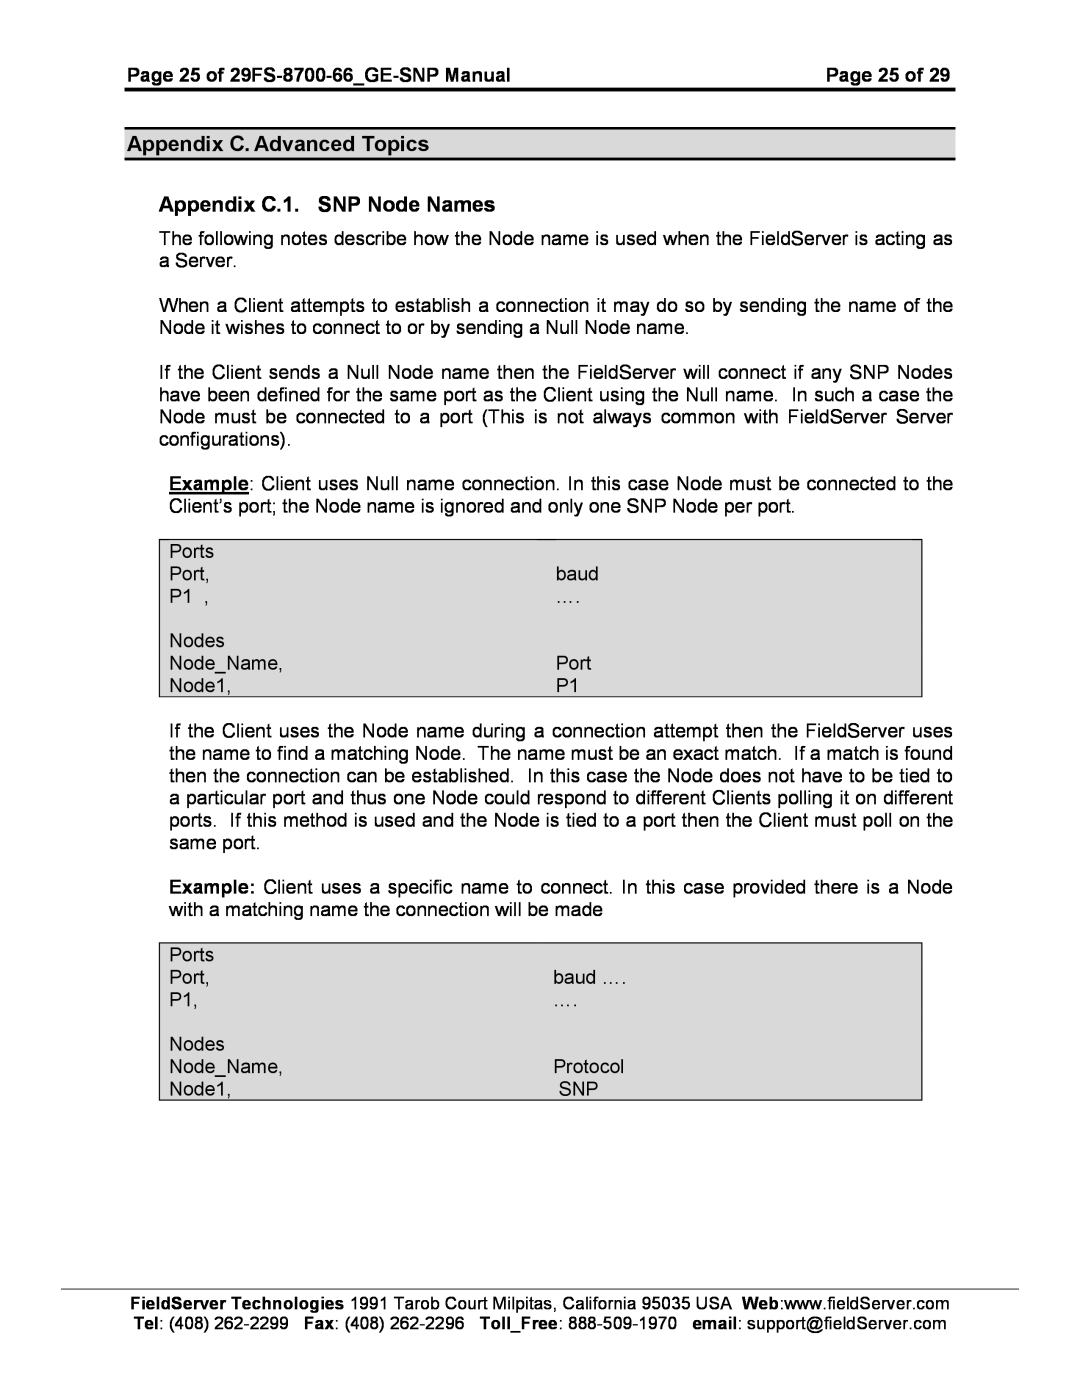 FieldServer FS-8700-66 instruction manual Appendix C. Advanced Topics Appendix C.1. SNP Node Names 